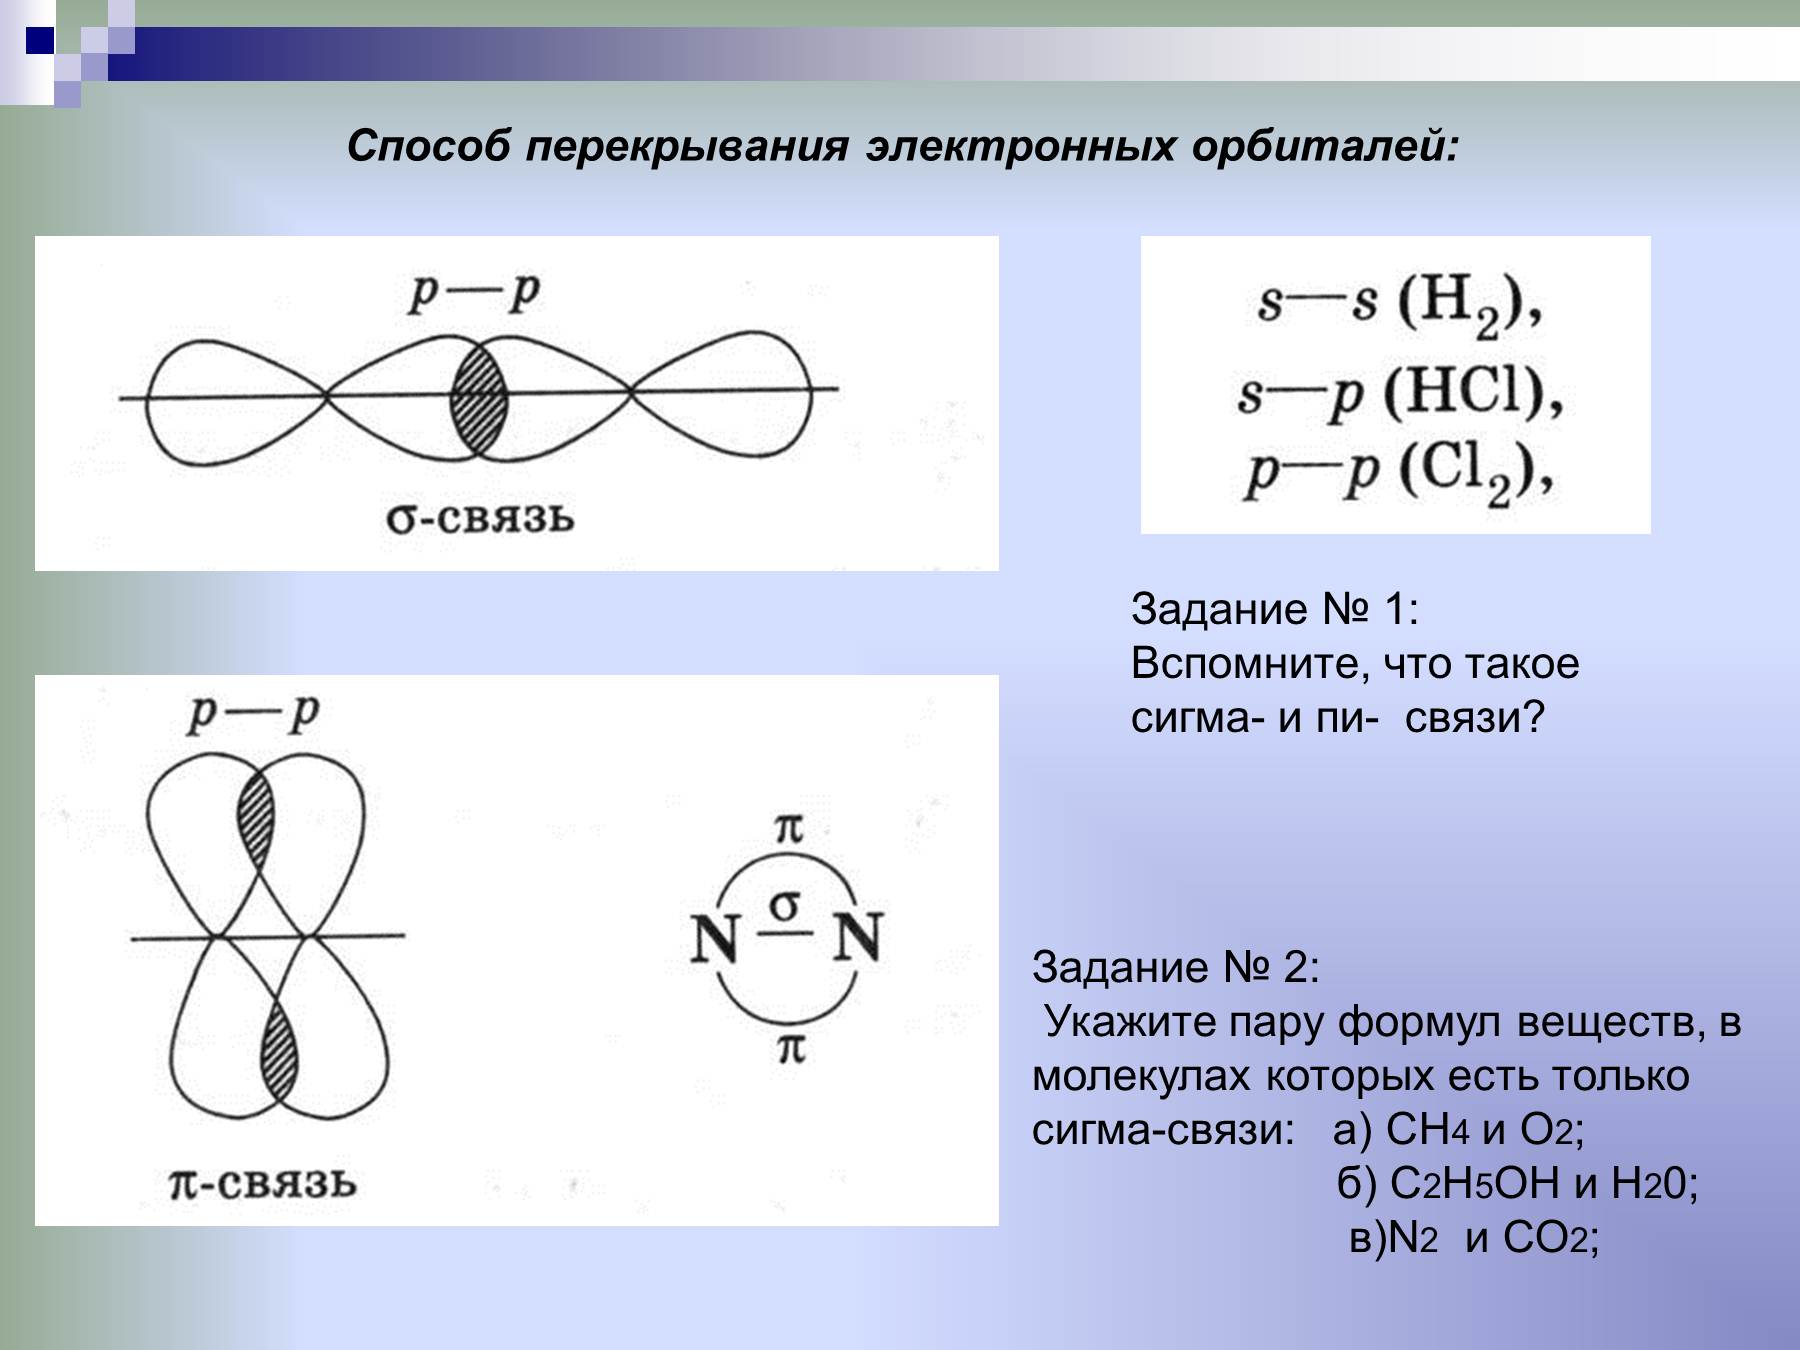 П связь в веществах. Типы связей в химии Сигма и пи. Альфа и пи связи в химии. Схема образования Сигма связи. Способы перекрывания электронных орбиталей (Сигма, пи).